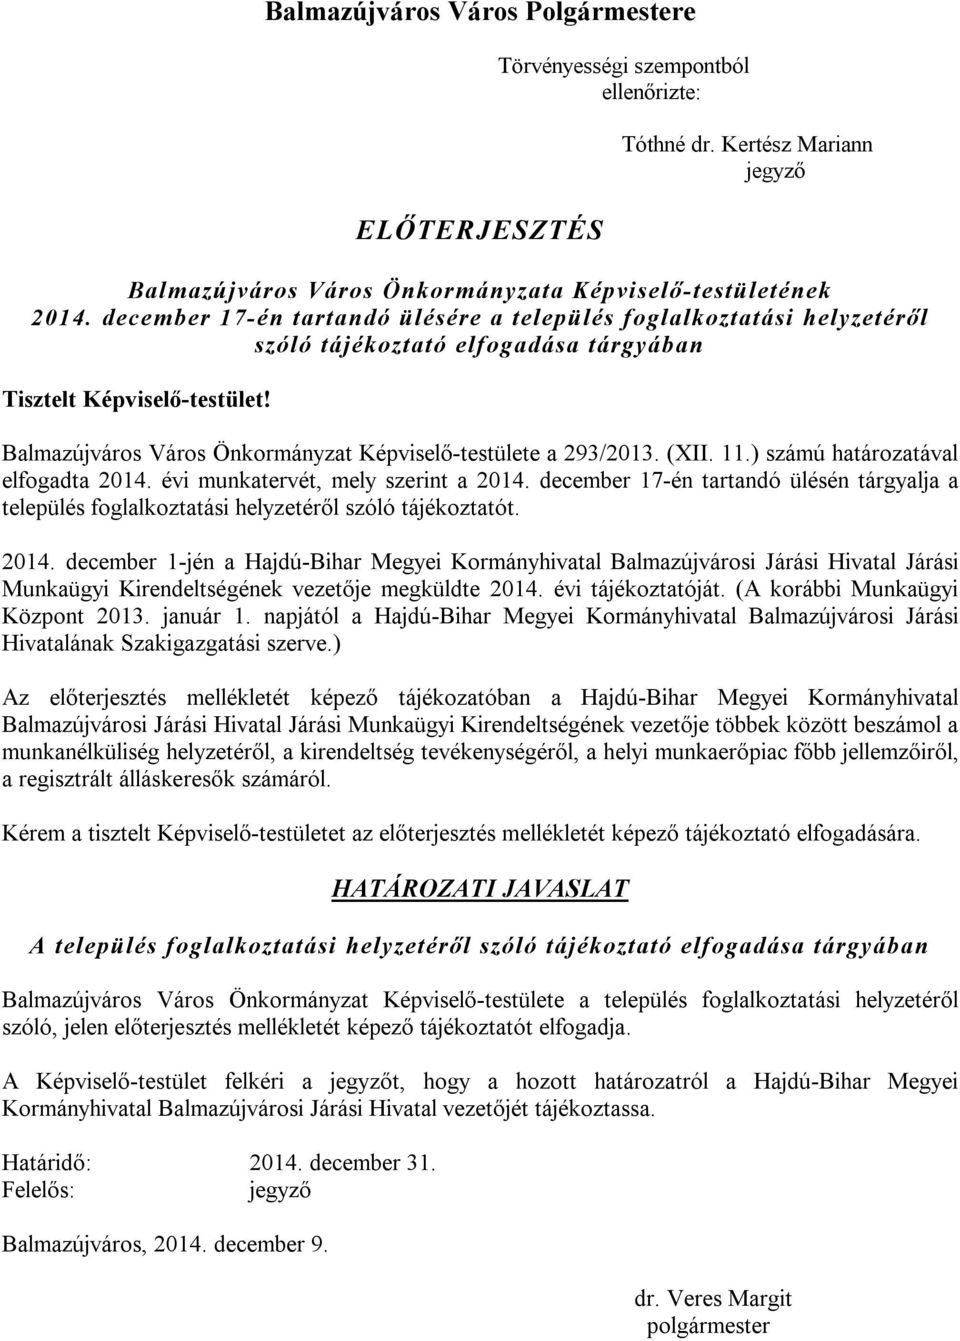 Balmazújváros Város Önkormányzat Képviselő-testülete a 293/2013. (XII. 11.) számú határozatával elfogadta 2014. évi munkatervét, mely szerint a 2014.